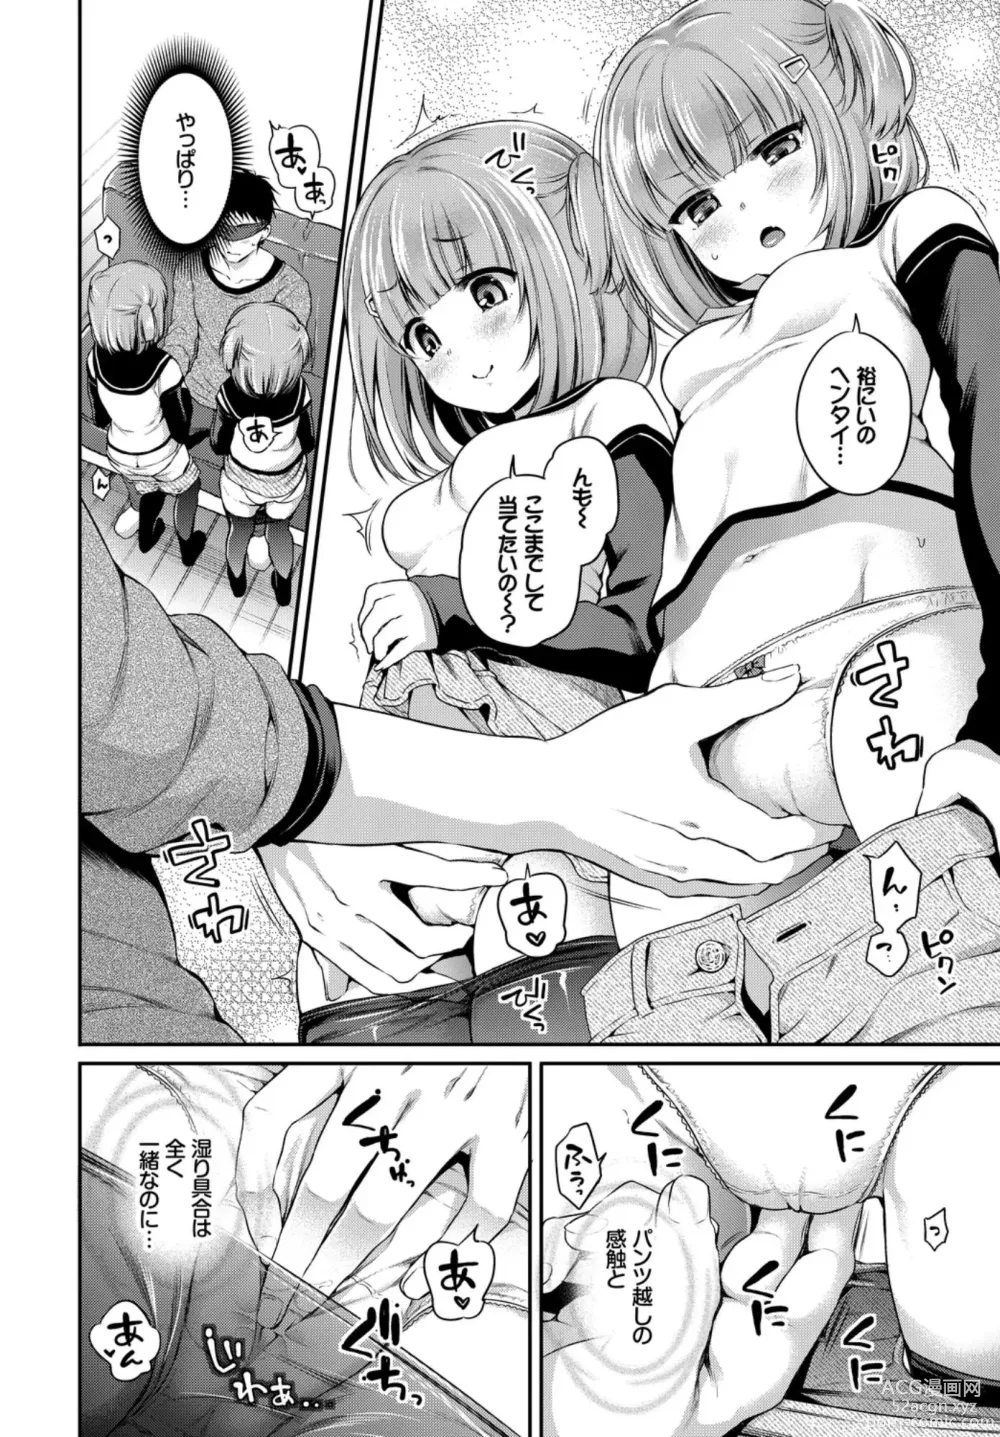 Page 10 of manga Oppai Sand de Shouten Shichao VOL. 2 ~Futago Hen~